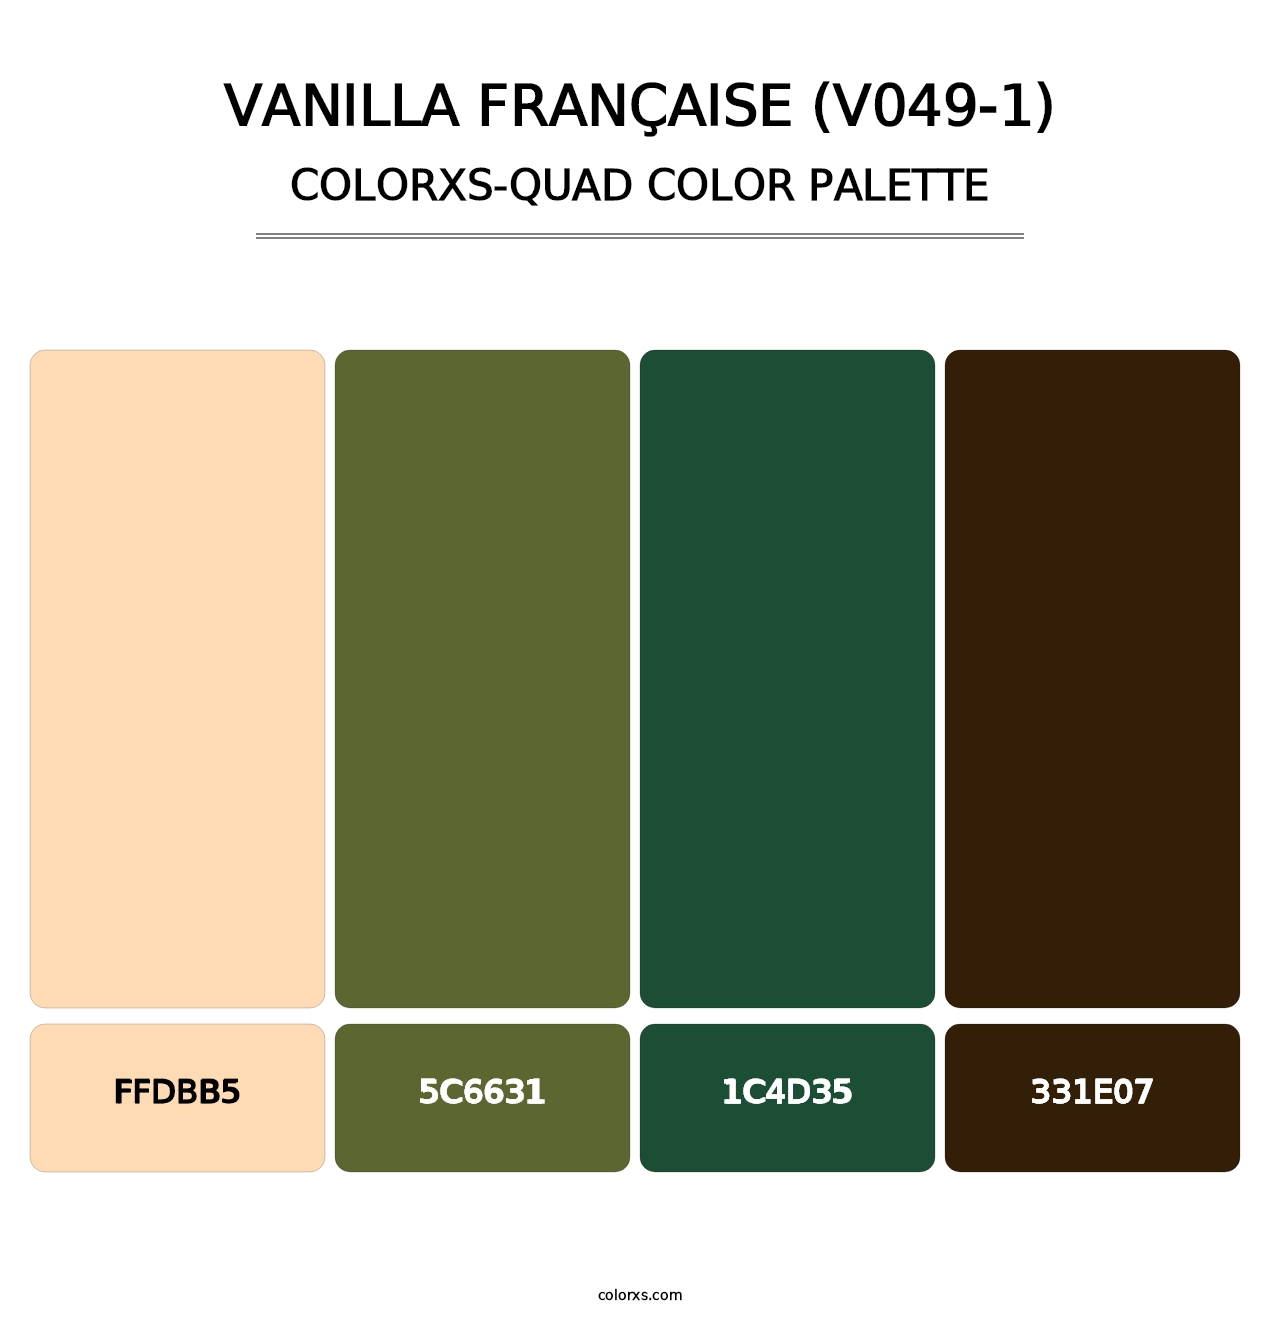 Vanilla Française (V049-1) - Colorxs Quad Palette